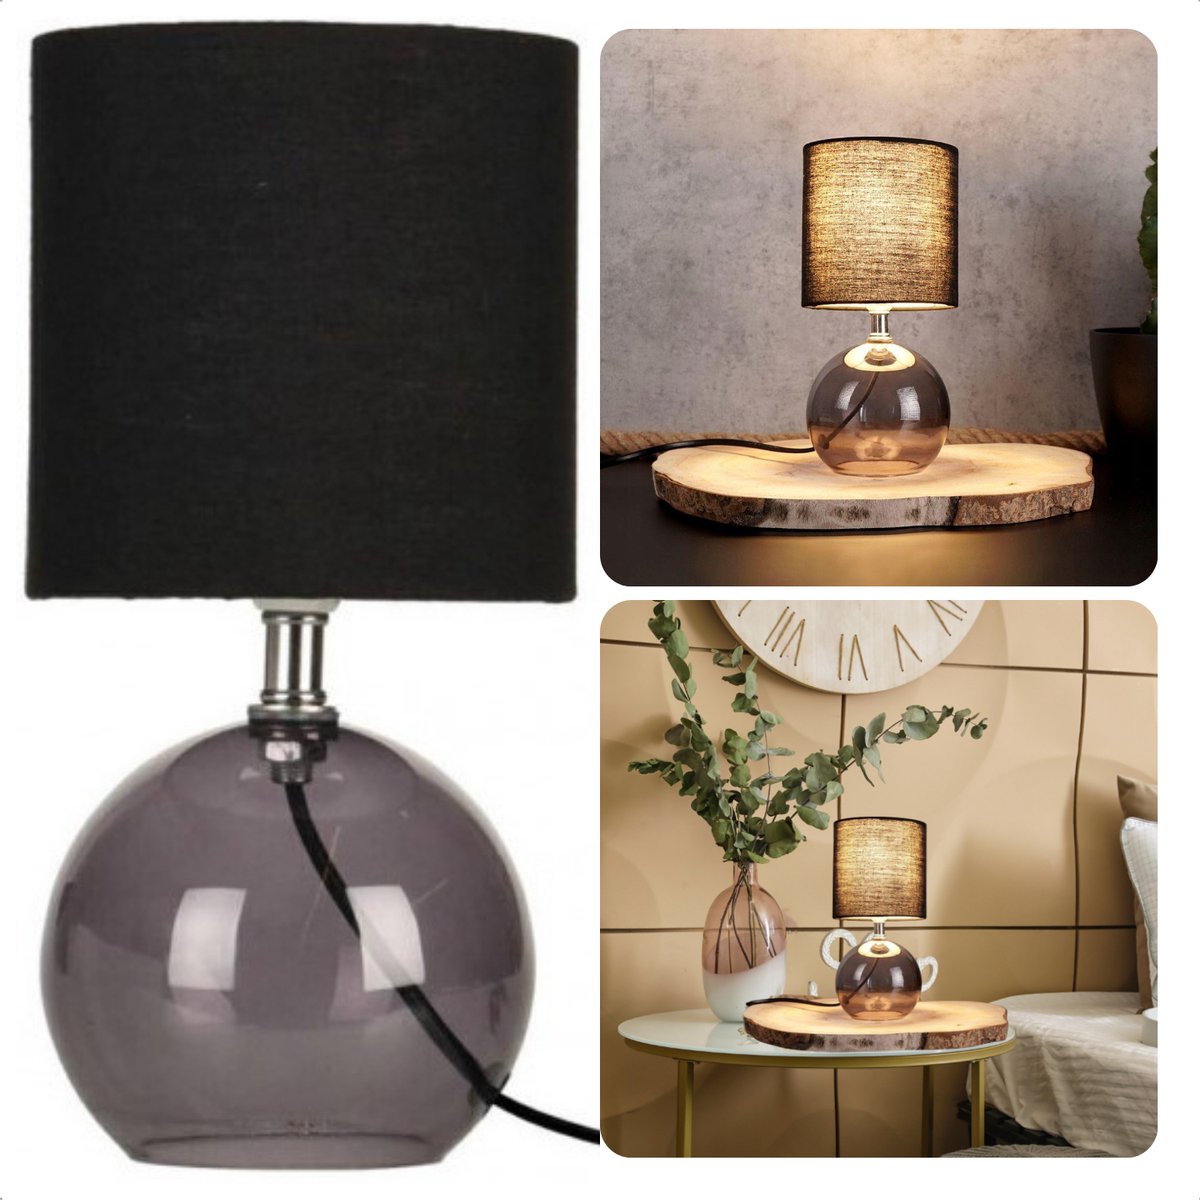 Cheqo® Tafellamp met Zwarte Lampenkap - 24cm - Zwart - Glazen Basis - Nachtkastje Lamp - Aan/Uit-Schakelaar - 150cm Snoer - E14